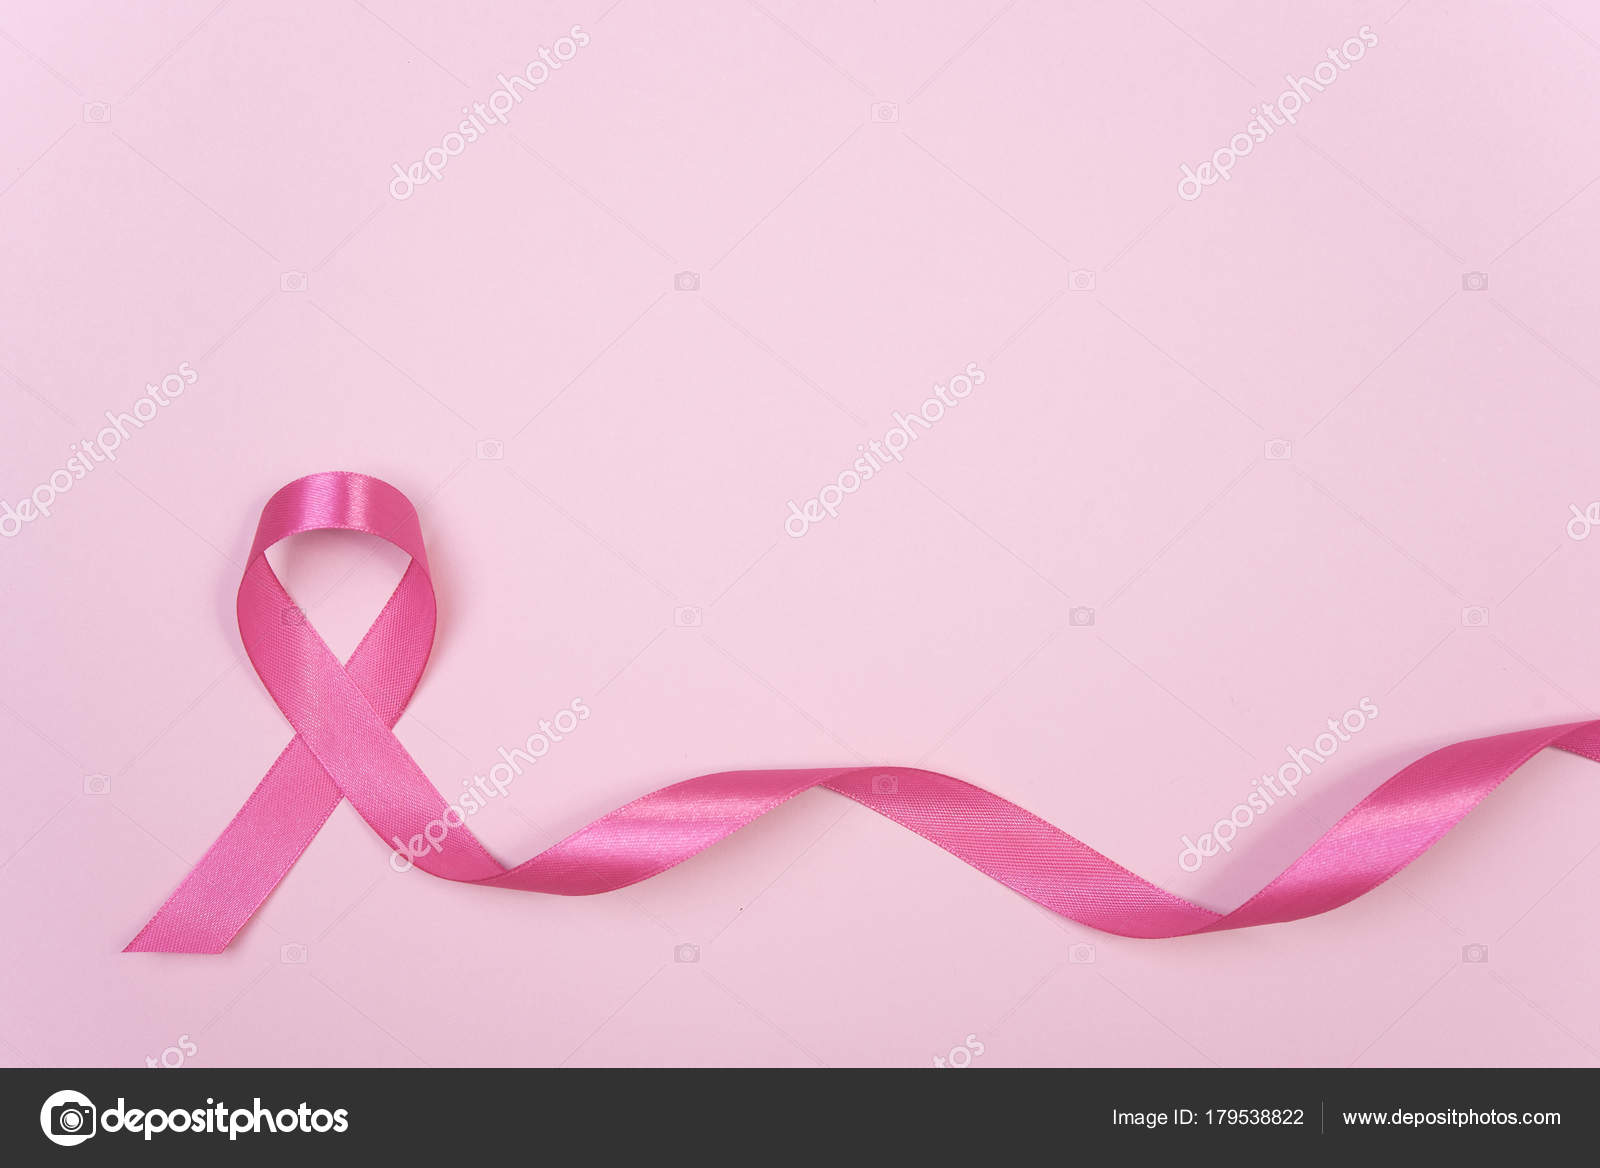 Hãy cùng chúng tôi truyền tay nhau thông điệp về sự quan tâm với bệnh ung thư vú. Hình nền nơ hồng tràn đầy sức sống này sẽ giúp chúng ta nhận ra vai trò quan trọng của việc phòng ngừa và chăm sóc sức khỏe chính mình.